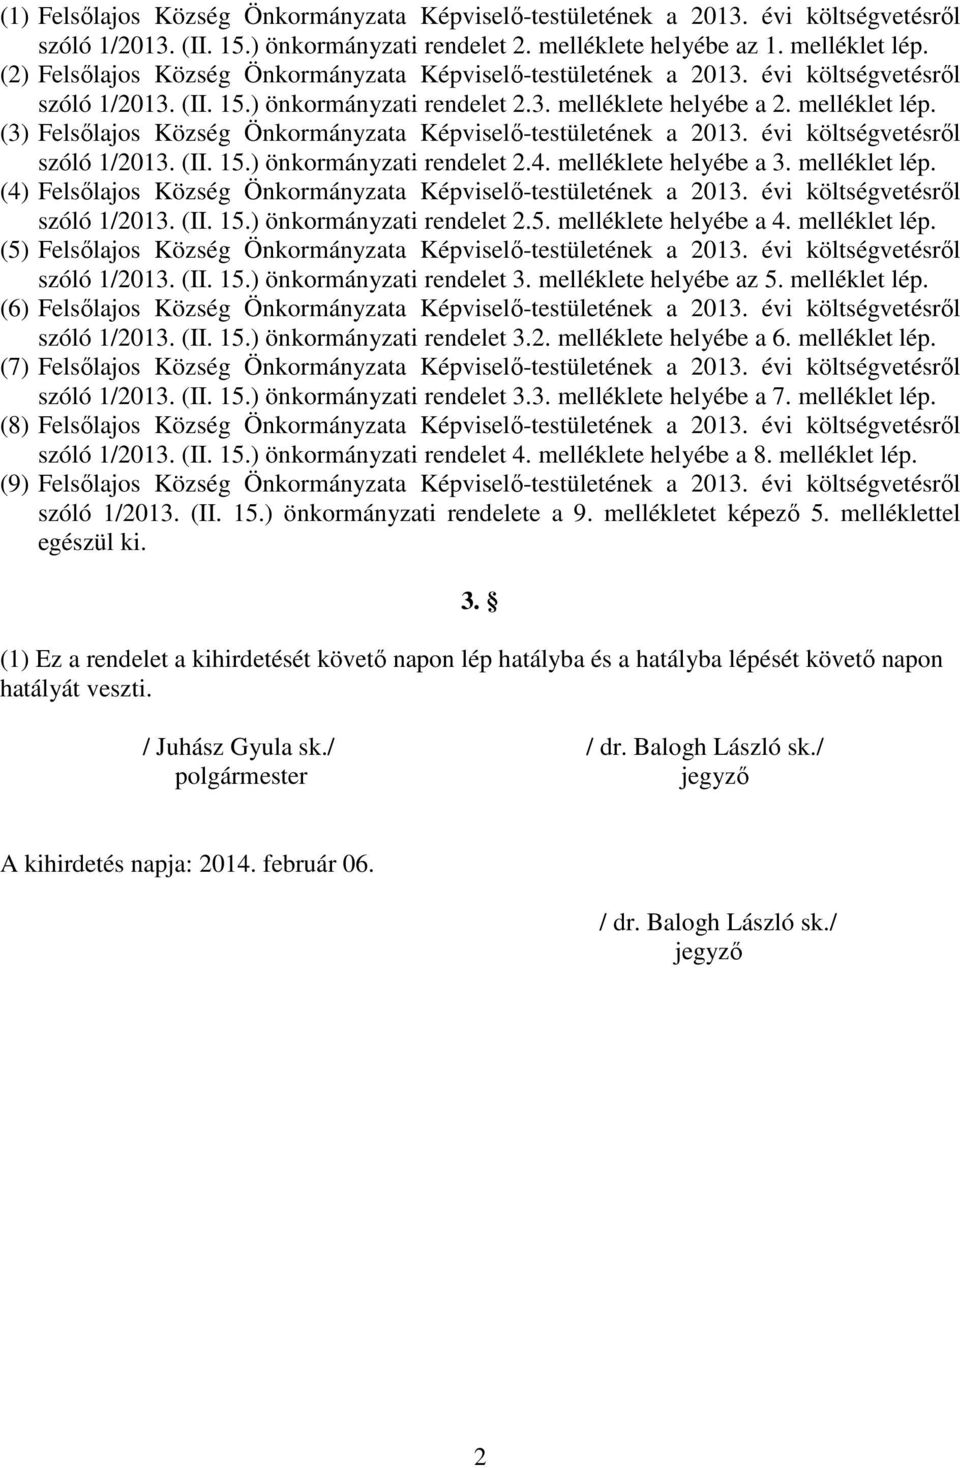 (3) Felsılajos Község Önkormányzata Képviselı-testületének a 2013. évi költségvetésrıl szóló 1/2013. (II. 15.) önkormányzati rendelet 2.4. melléklete helyébe a 3. melléklet lép.